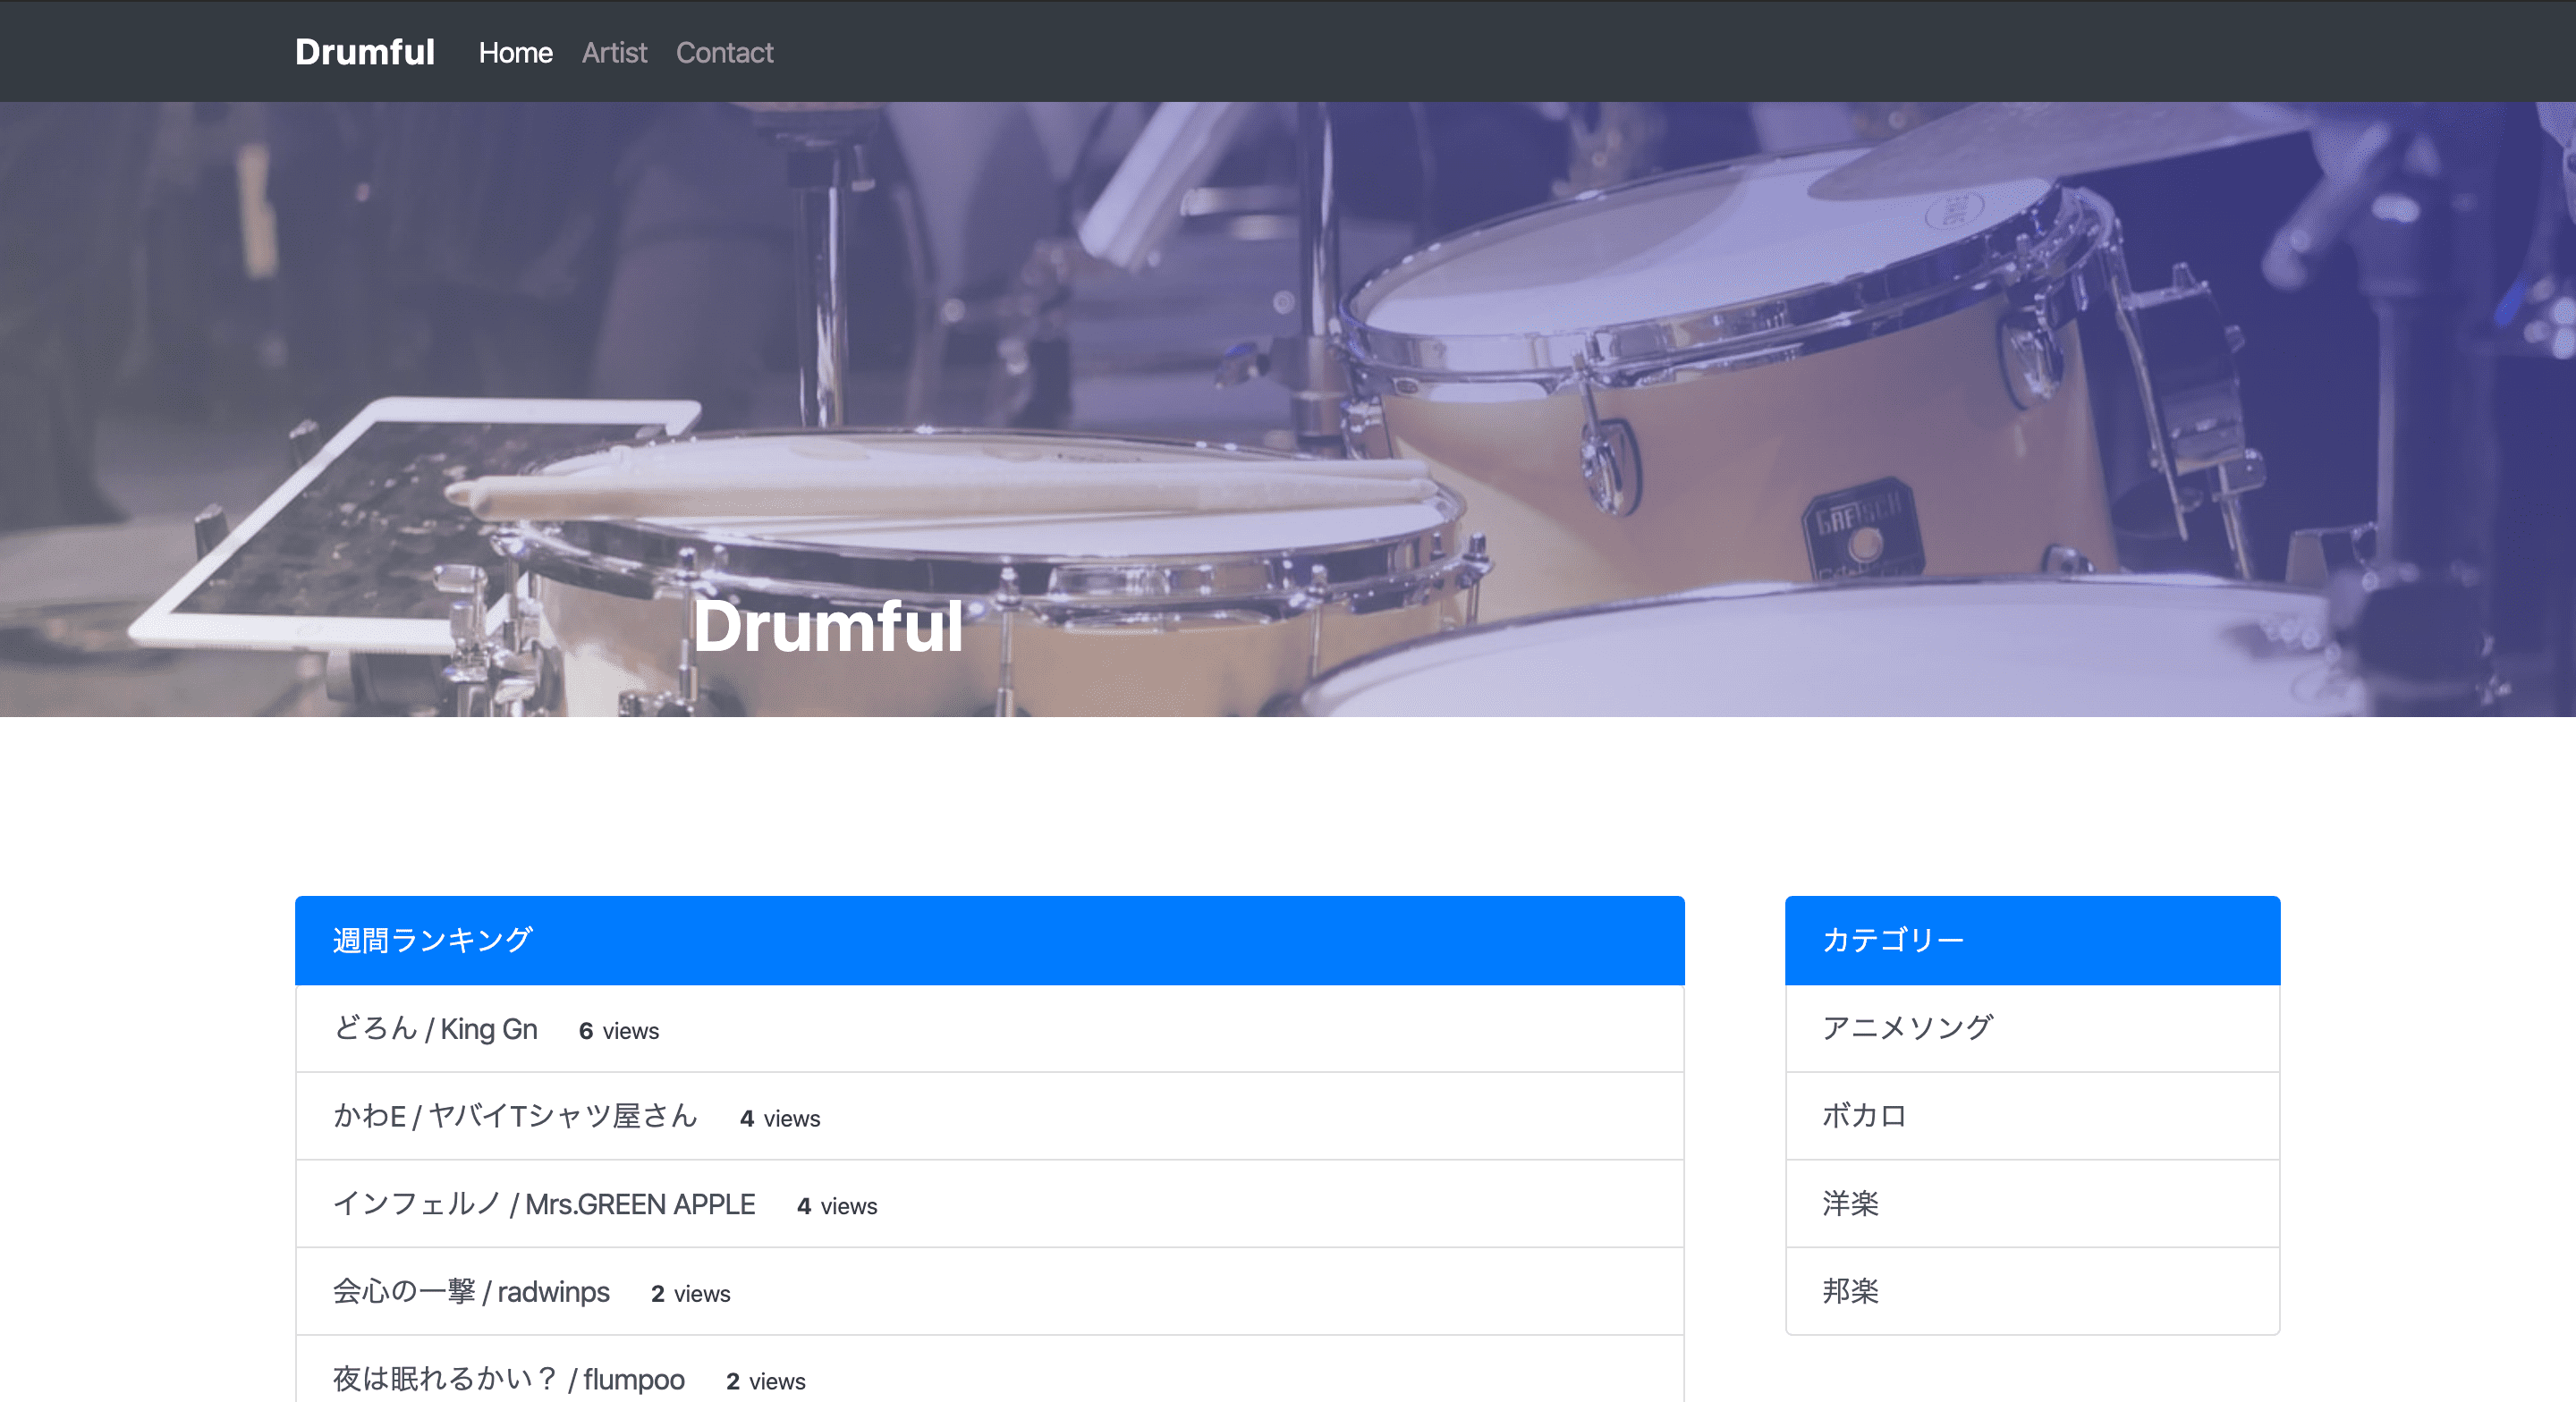 Drumful